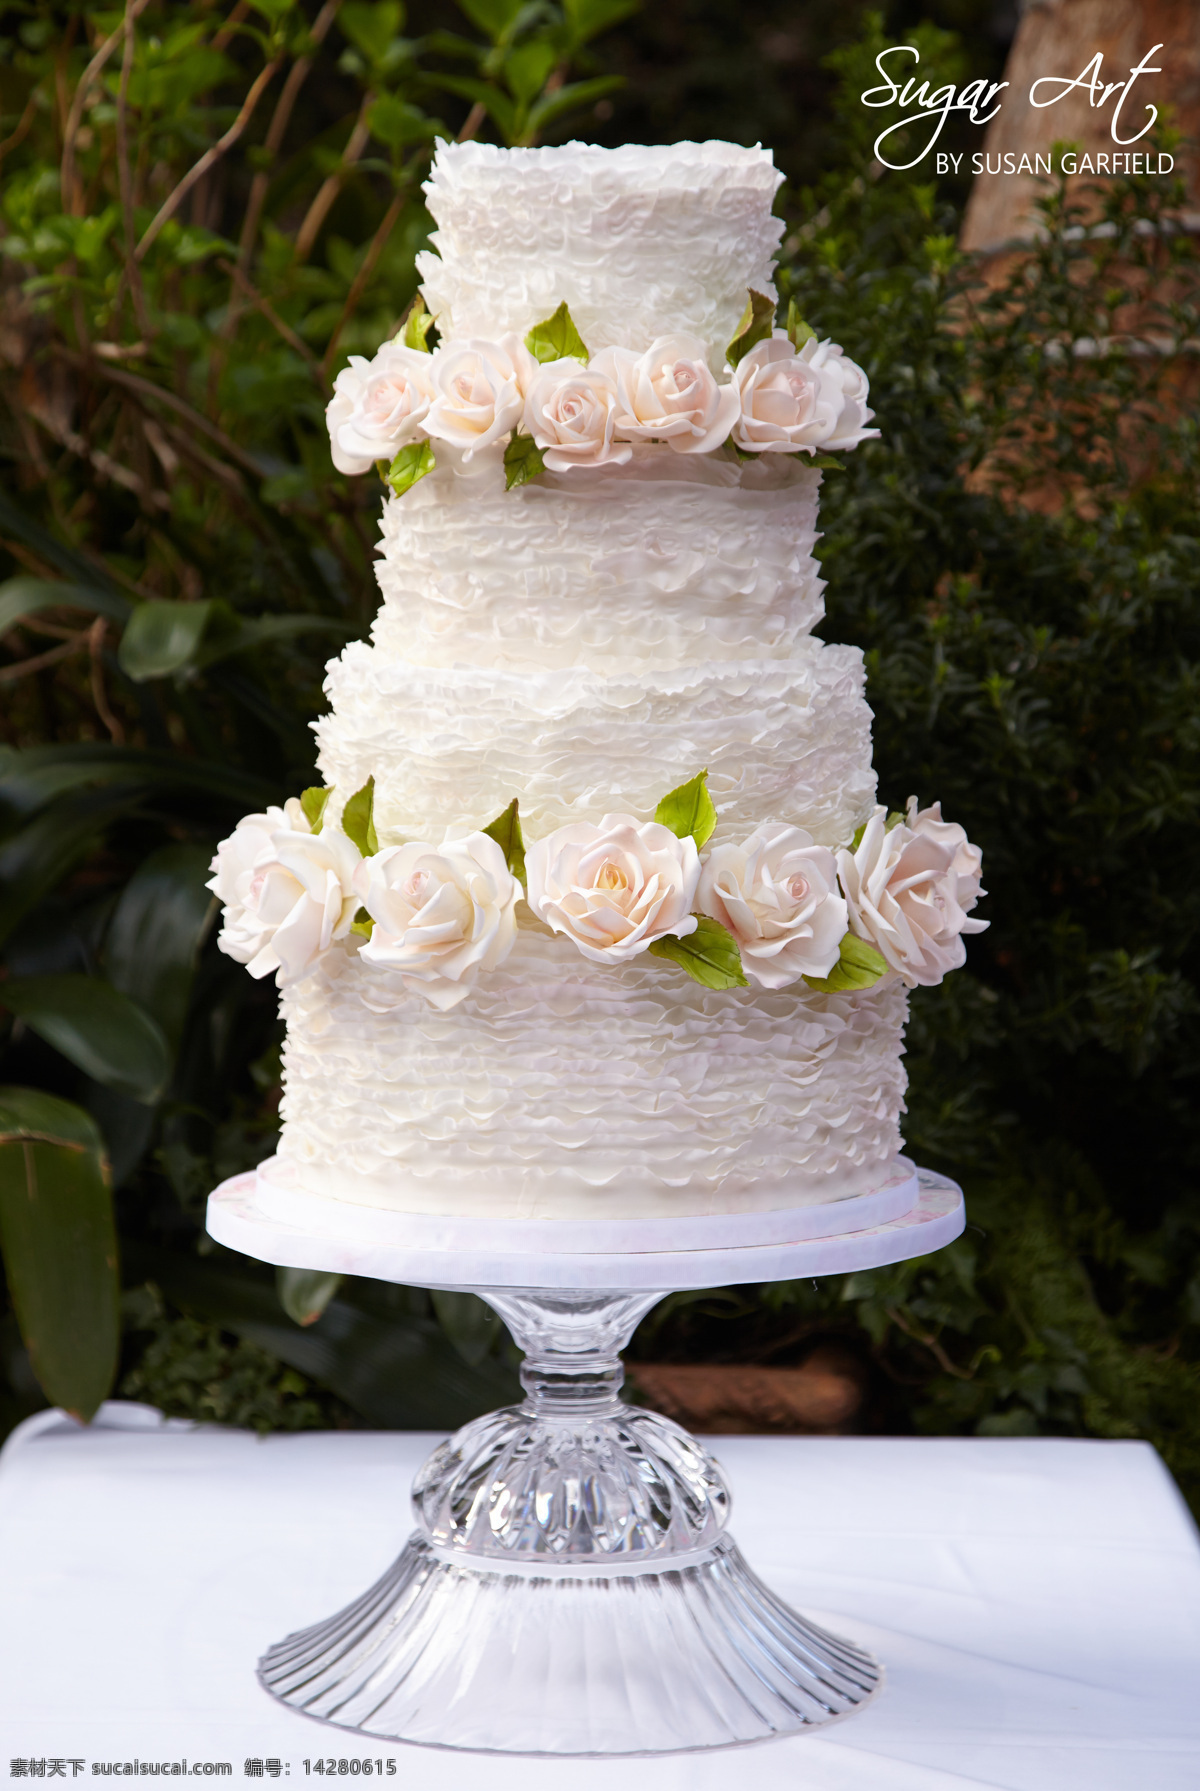 蛋糕 奶油蛋糕 三层蛋糕 创意蛋糕 造型蛋糕 梦幻蛋糕 婚礼蛋糕 玫瑰蛋糕 美食 精致 经典 西餐美食 餐饮美食